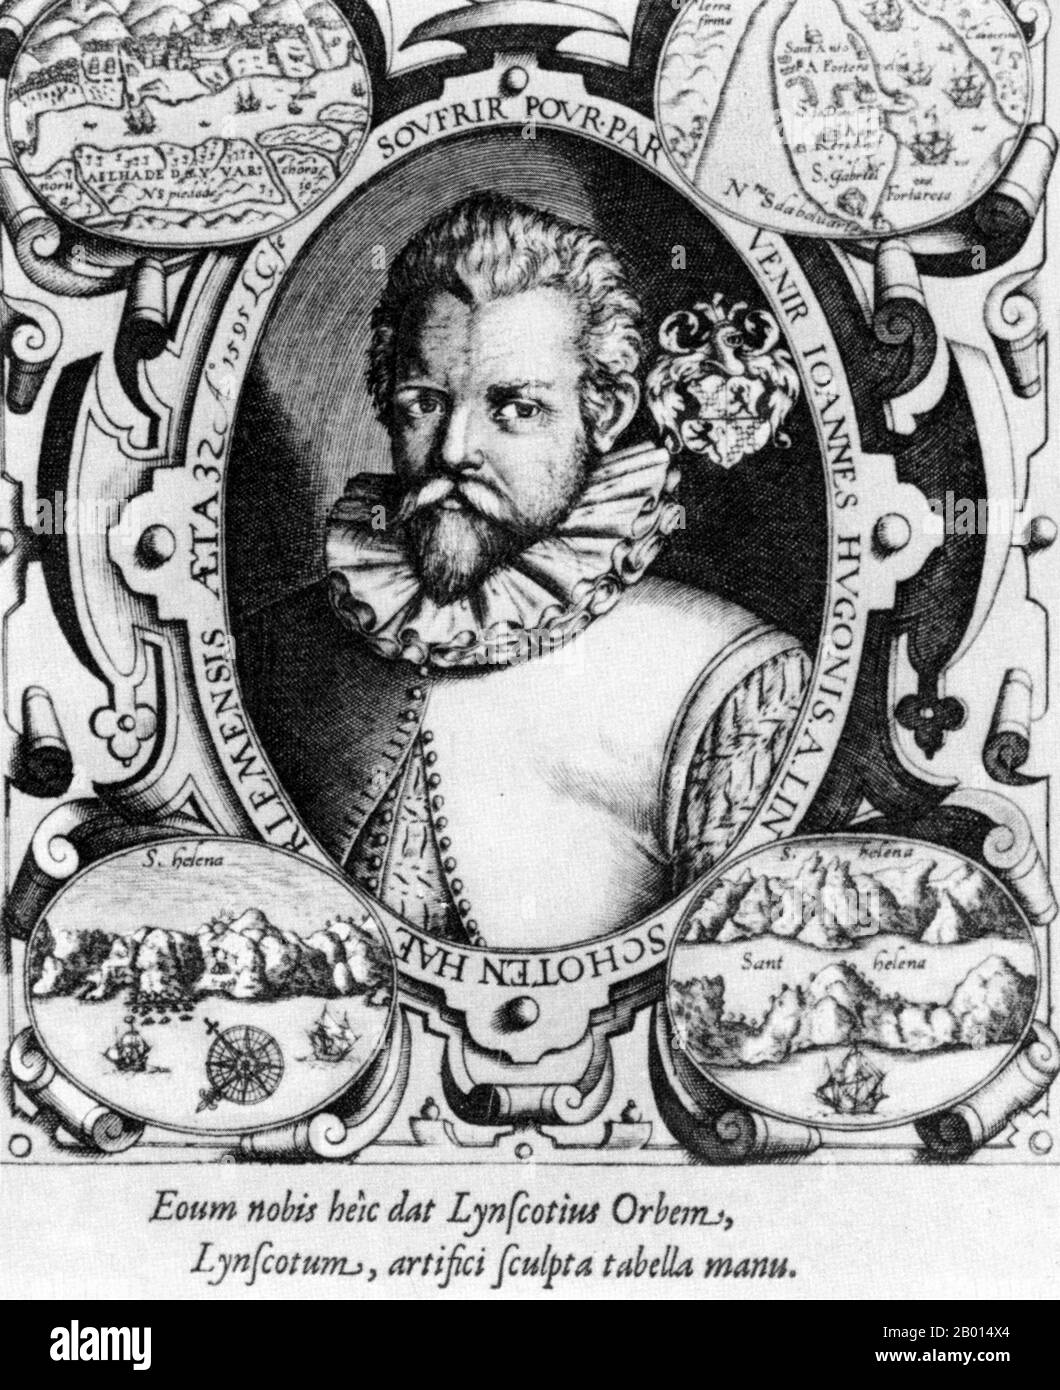 Pays-Bas/Indes orientales: Jan Huyten van Linschoten (1563 - 8 février 1611), un «Wikileaker» médiéval qui a copié des cartes maritimes portugaises et les a publiées en Hollande. Gravure, c. xviie siècle. Jan Huyghen van Linschoten était un commerçant, voyageur et historien protestant néerlandais qui a été crédité de copier des cartes marines portugaises top-secrètes tout en travaillant comme secrétaire de l'archevêque portugais de Goa dans les années 1580. Il a publié plusieurs livres en Hollande qui ont permis d'ouvrir le passage maritime vers les Indes orientales insaisissables aux Anglais et aux Hollandais., brisant le monopole portugais Banque D'Images